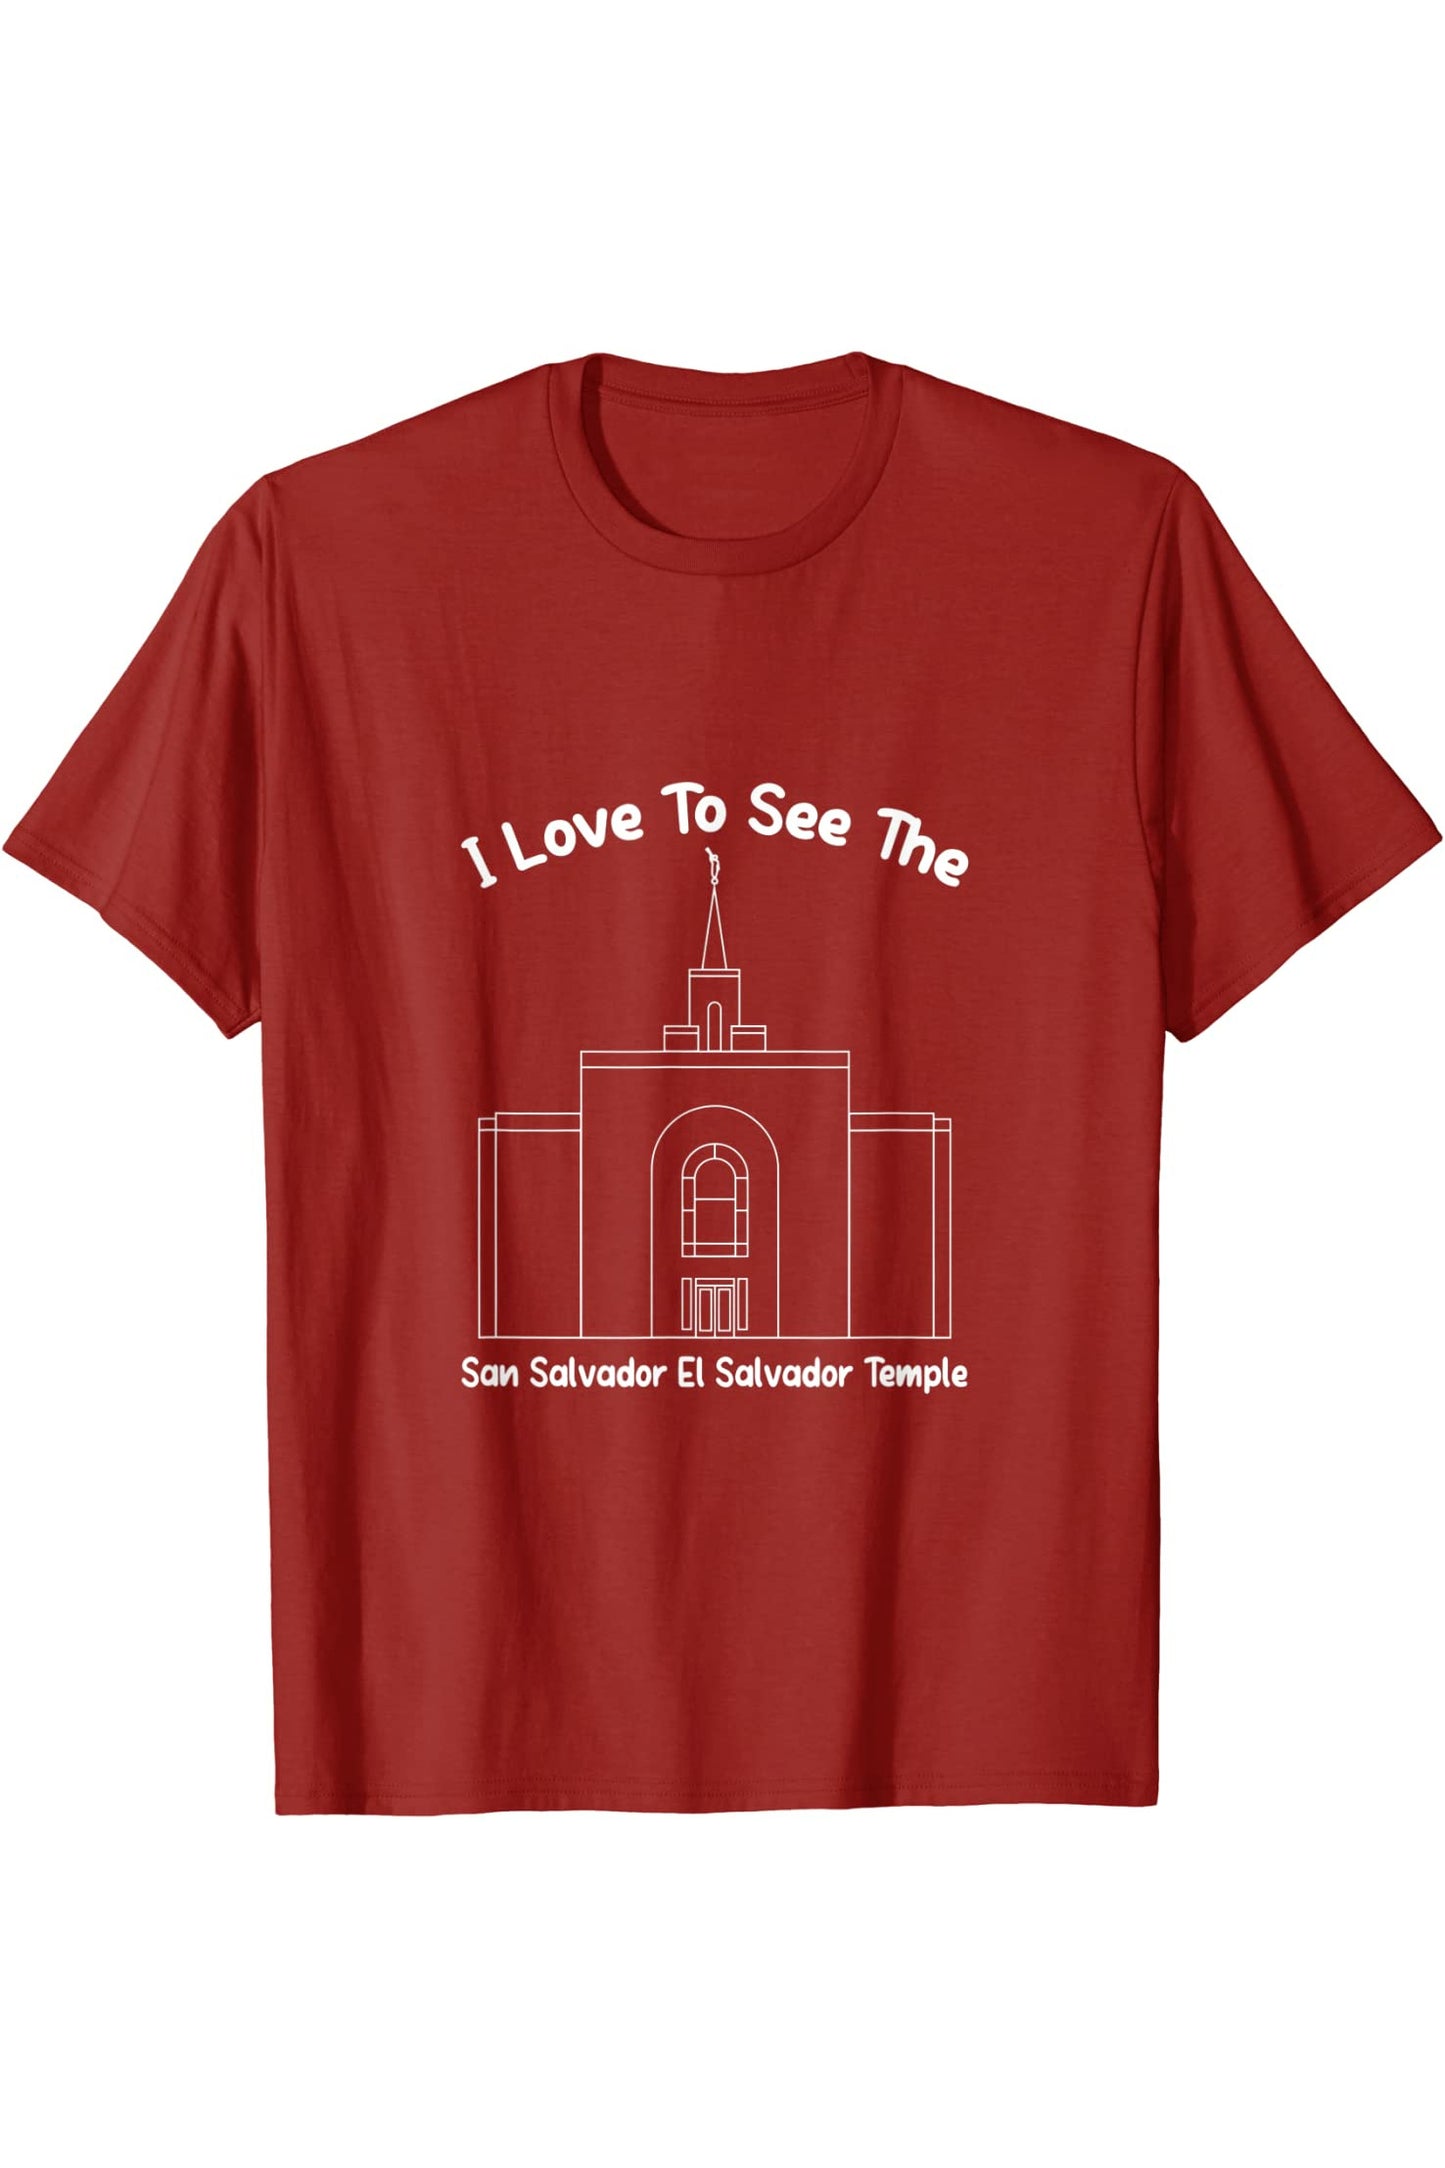 San Salvador El Salvador Temple T-Shirt - Primary Style (English) US